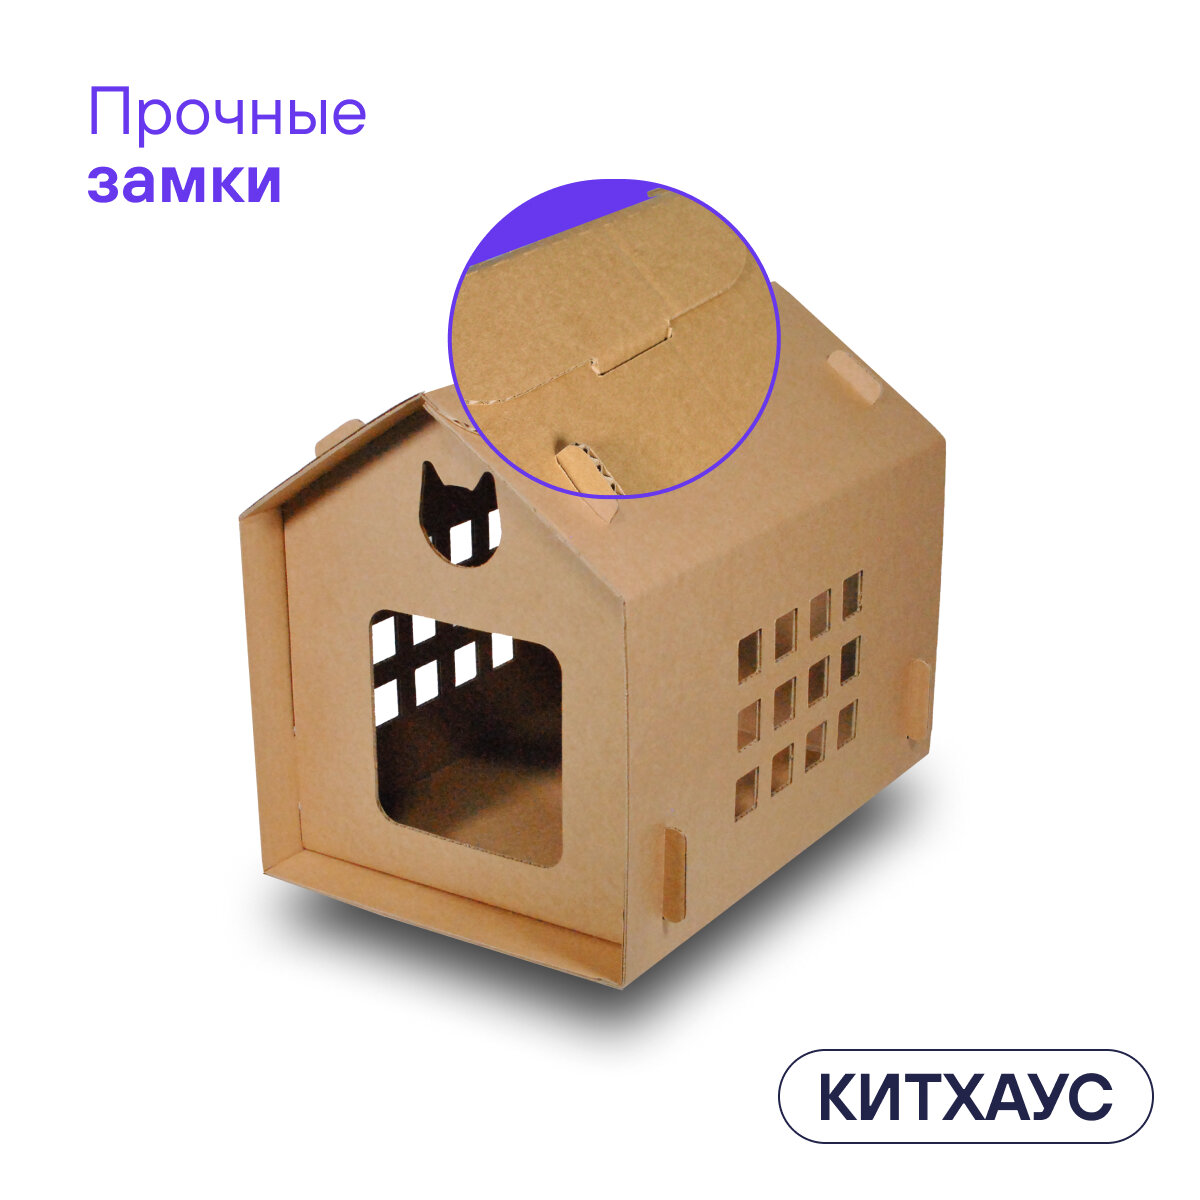 Домик для кошек и собак из картона BOXY китхаус, лежанка для кошек, гофрокартон, бурый цвет, 35х50х41 см, 1 шт. в комплекте. - фотография № 11